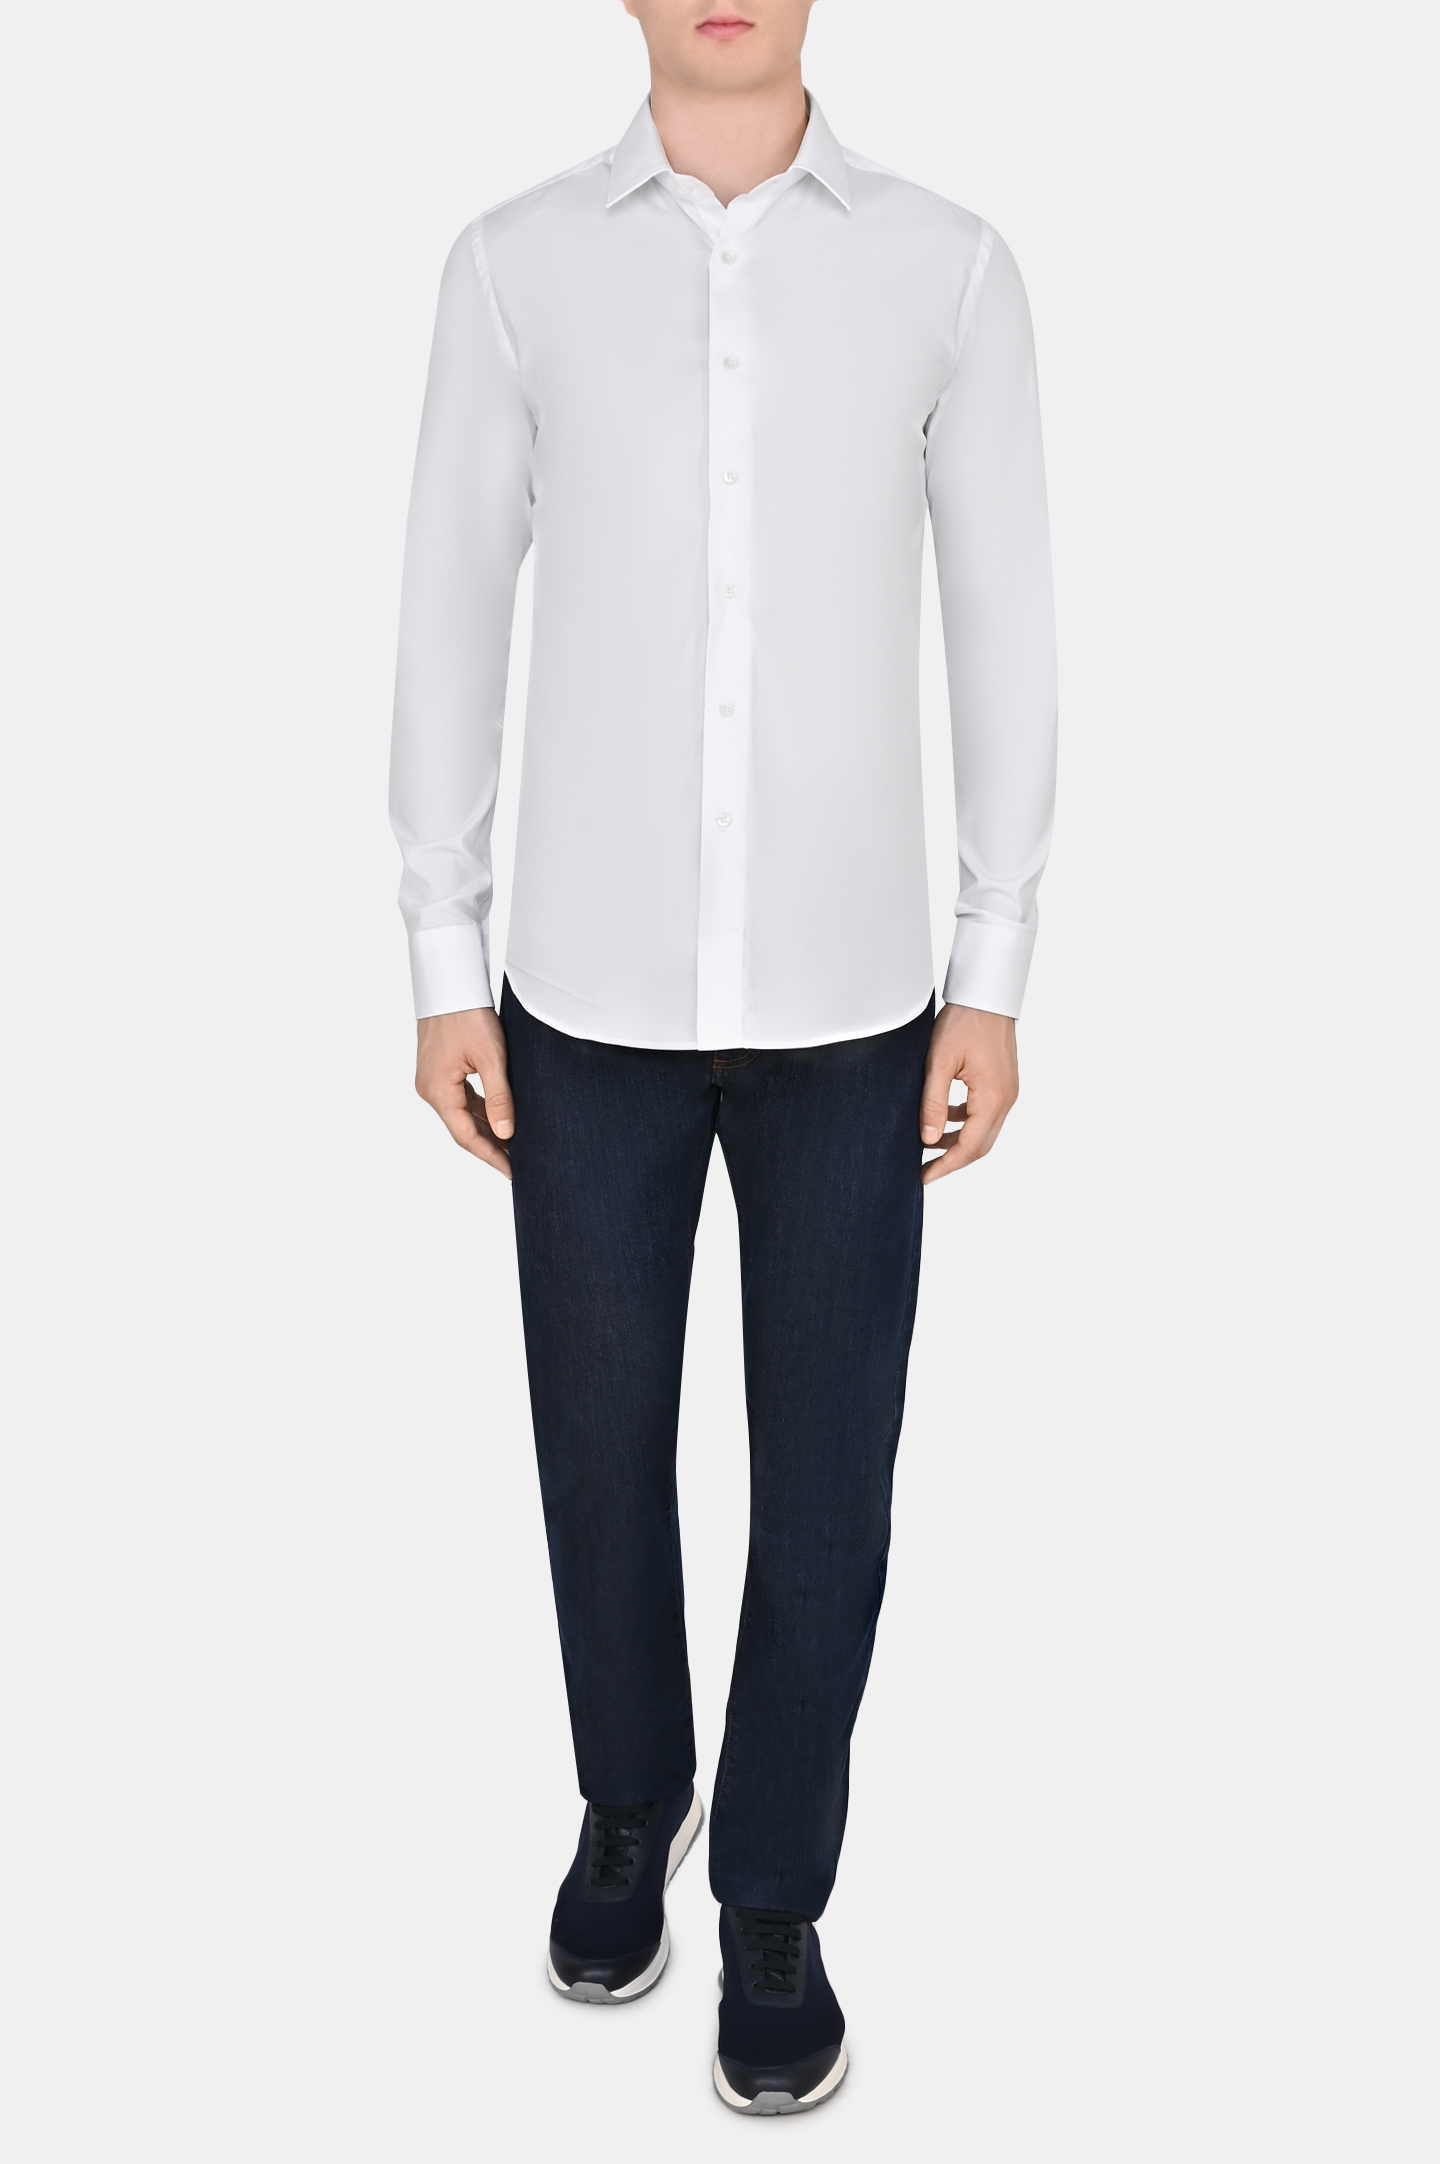 Рубашка CANALI GA01222 XA1, цвет: Белый, Мужской